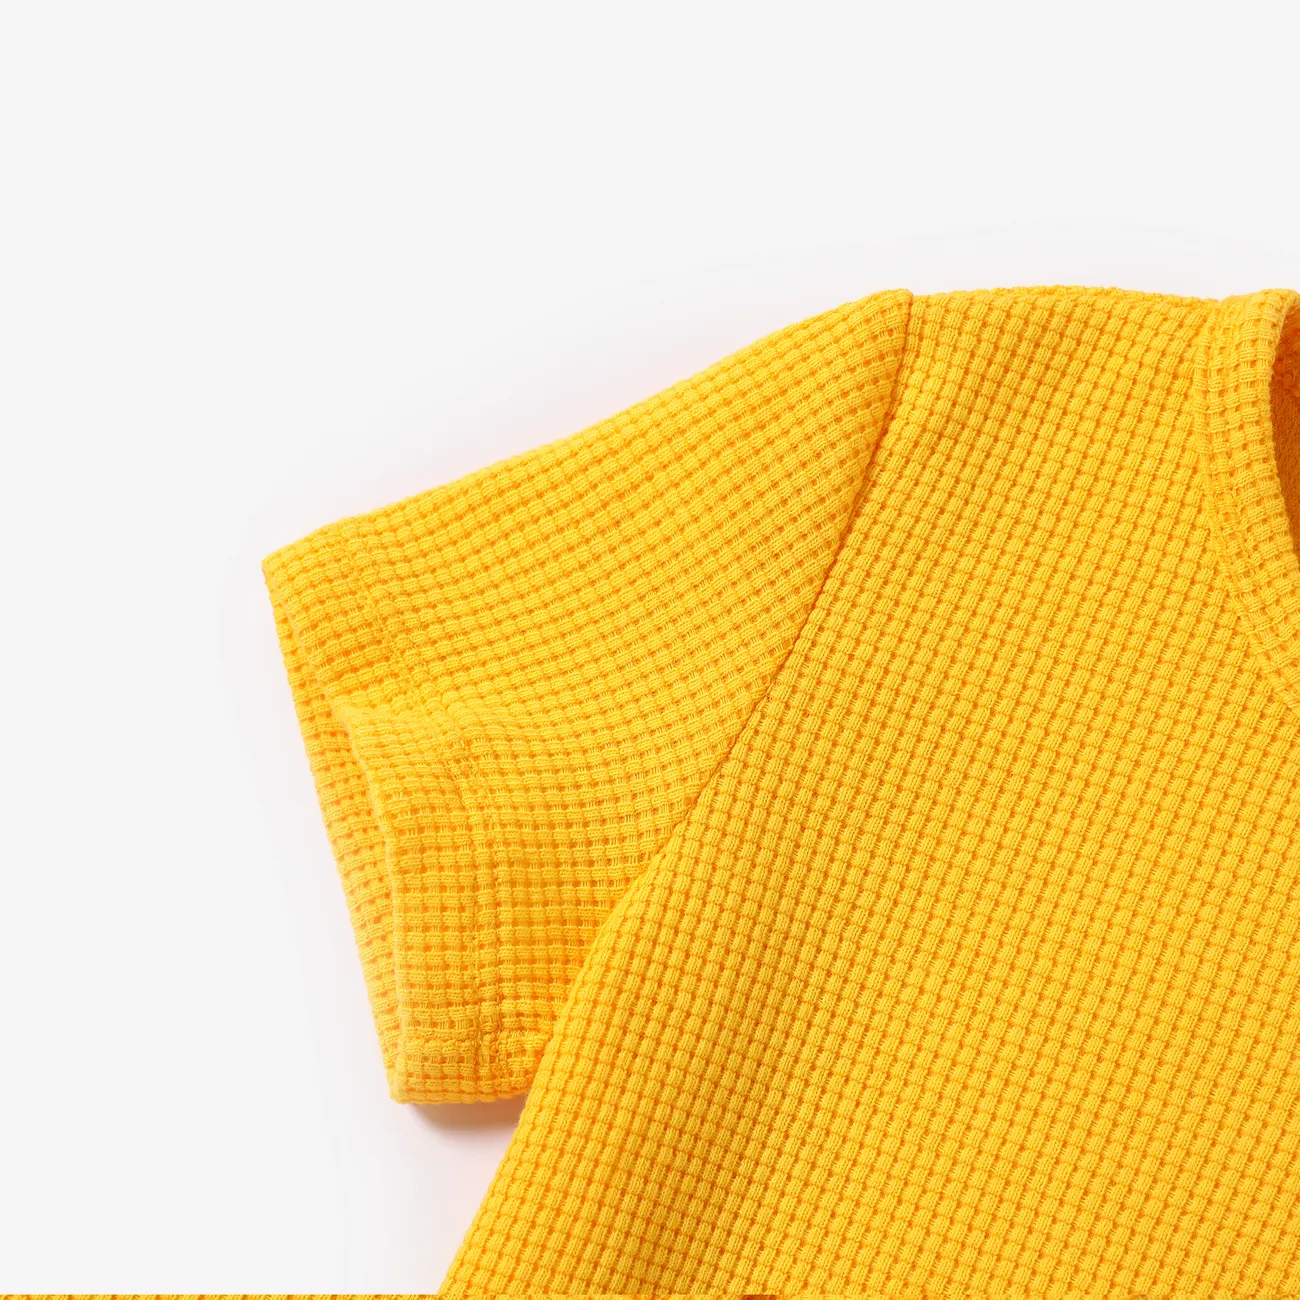 2 unidades Criança Menino Hipertátil/3D Infantil Leão conjuntos de camisetas Amarelo big image 1